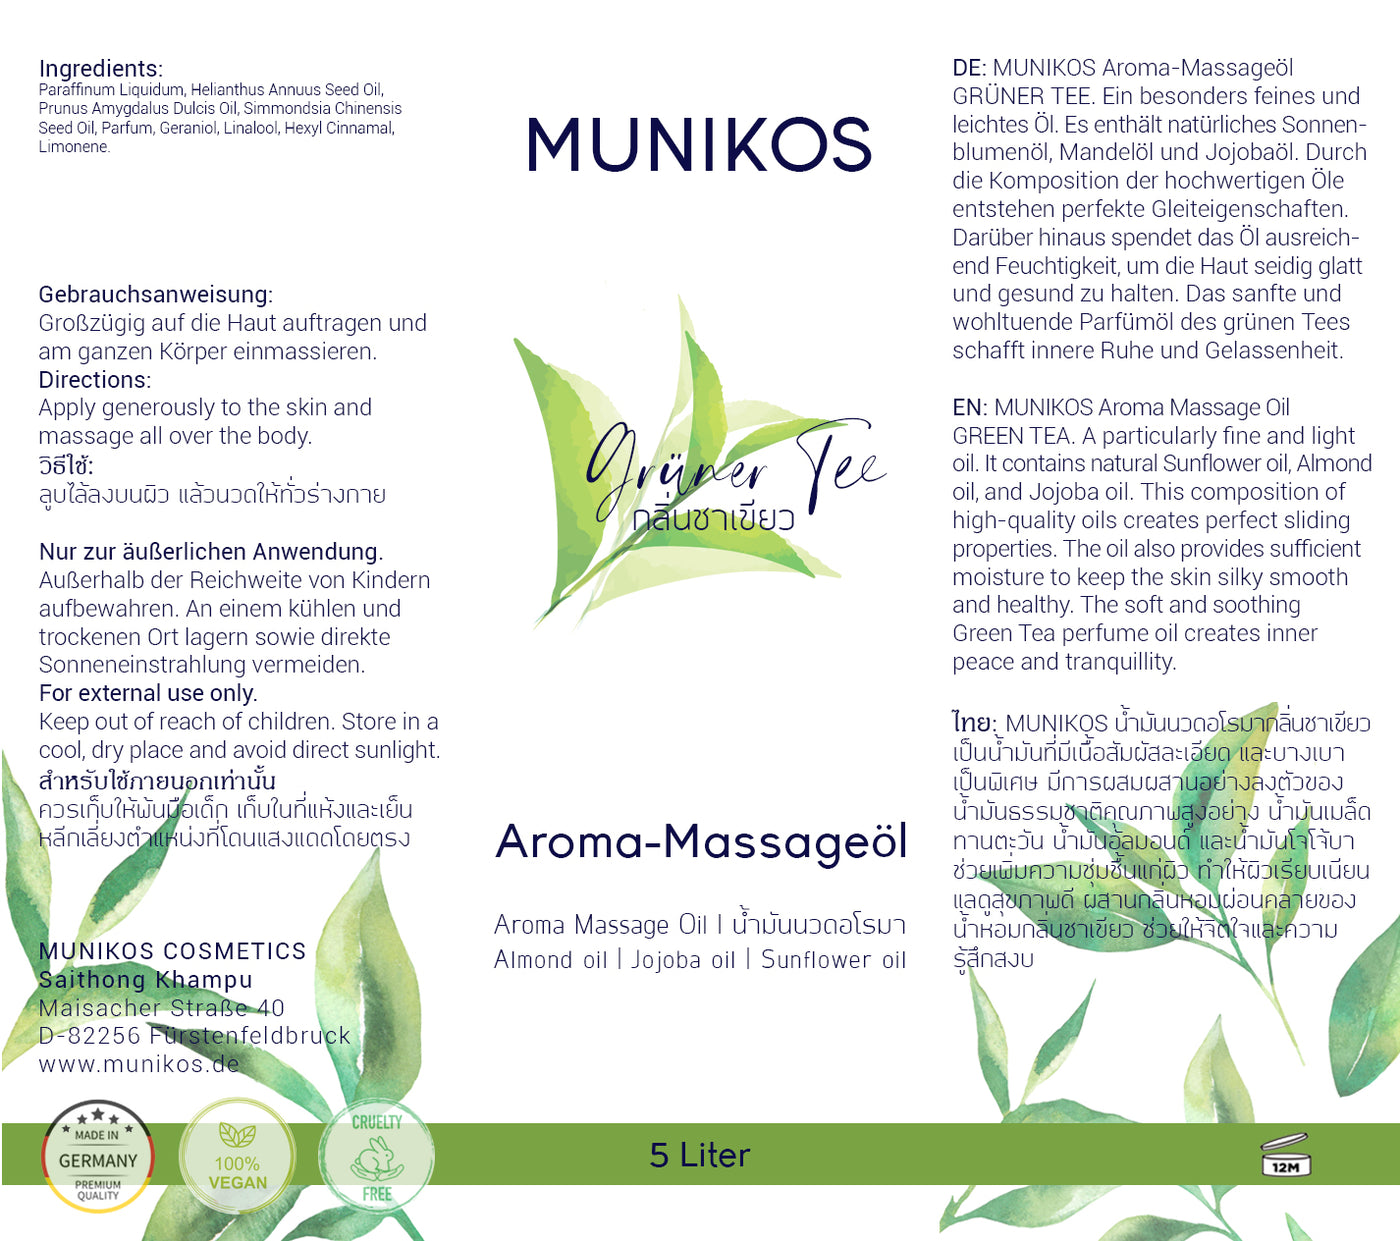 Aroma Massage Oil GREEN TEA